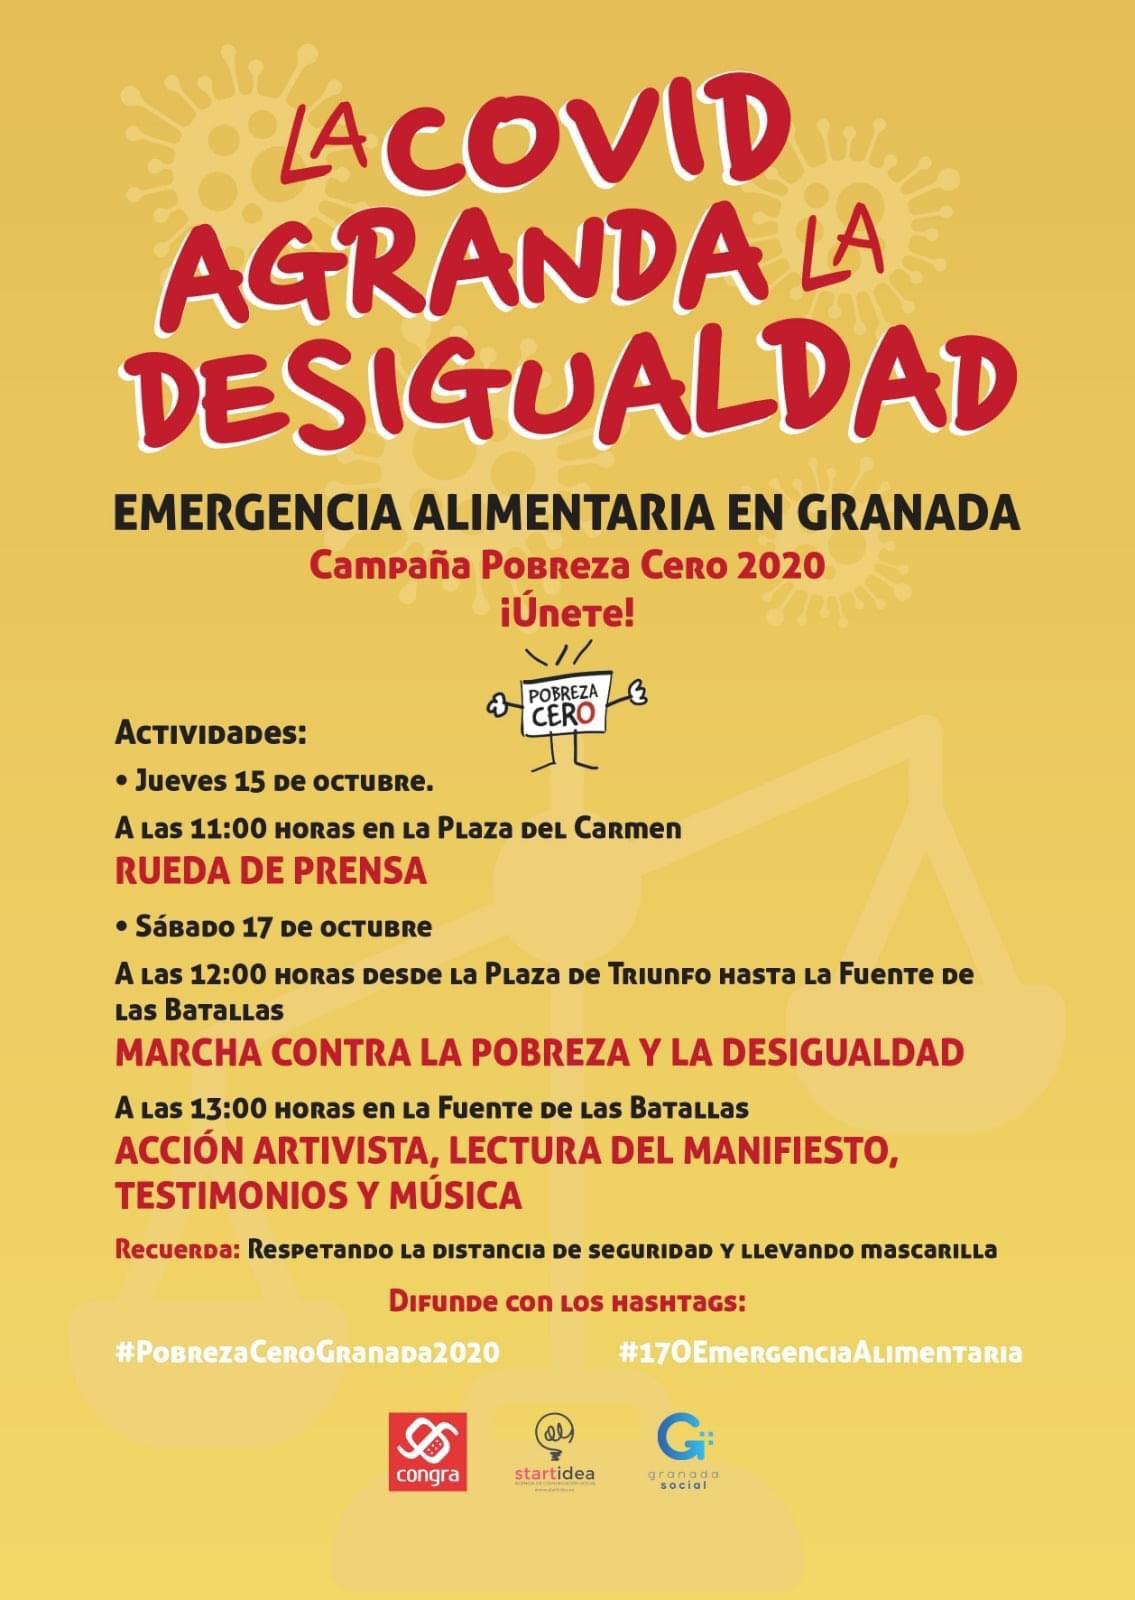 La Plataforma Pobreza Cero de Granada, convoca a la sociedad granadina a unirse contra la pobreza